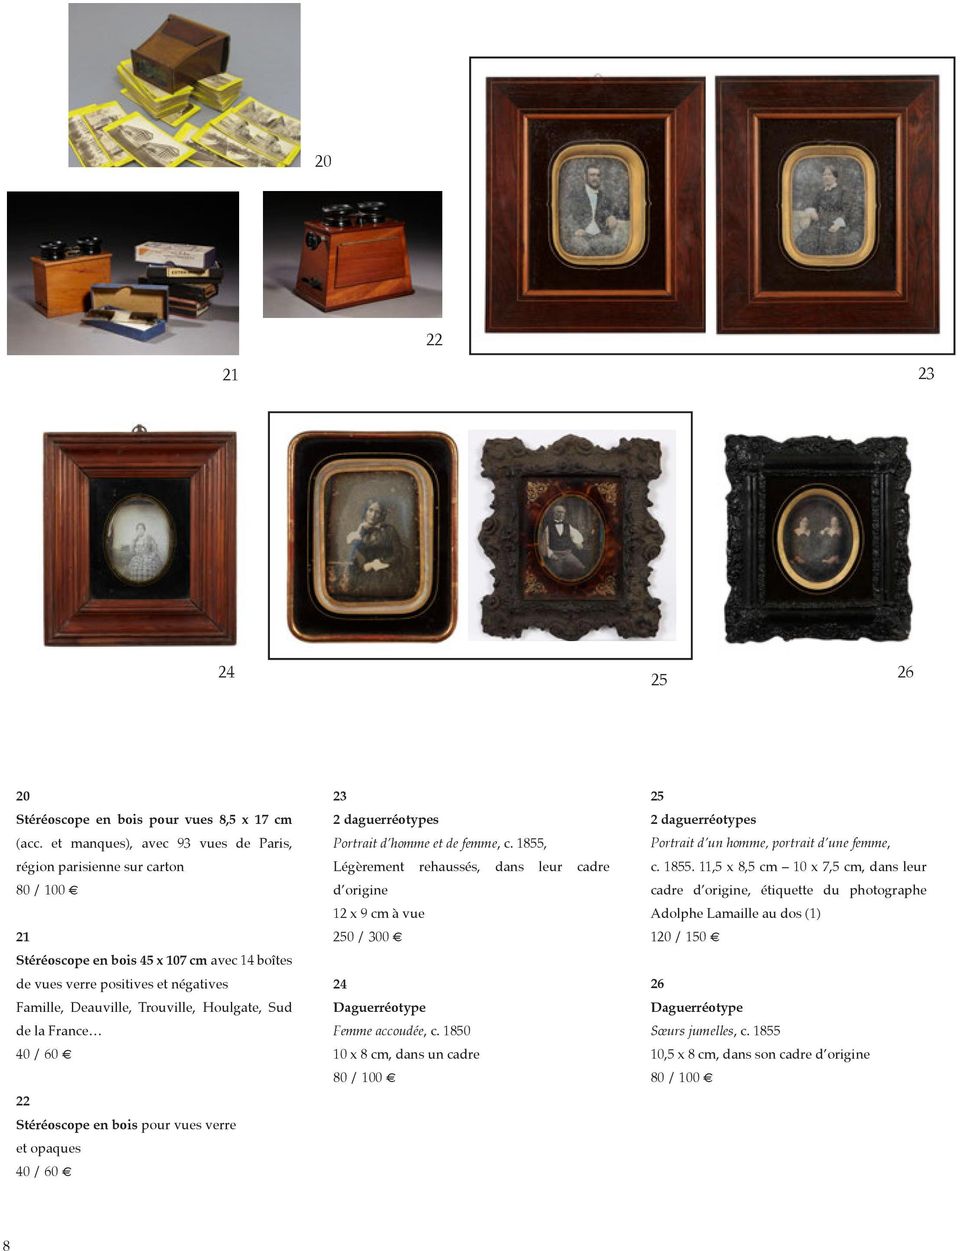 la France 40 / 60 22 Stéréoscope en bois pour vues verre et opaques 40 / 60 23 2 daguerréotypes Portrait d homme et de femme, c.